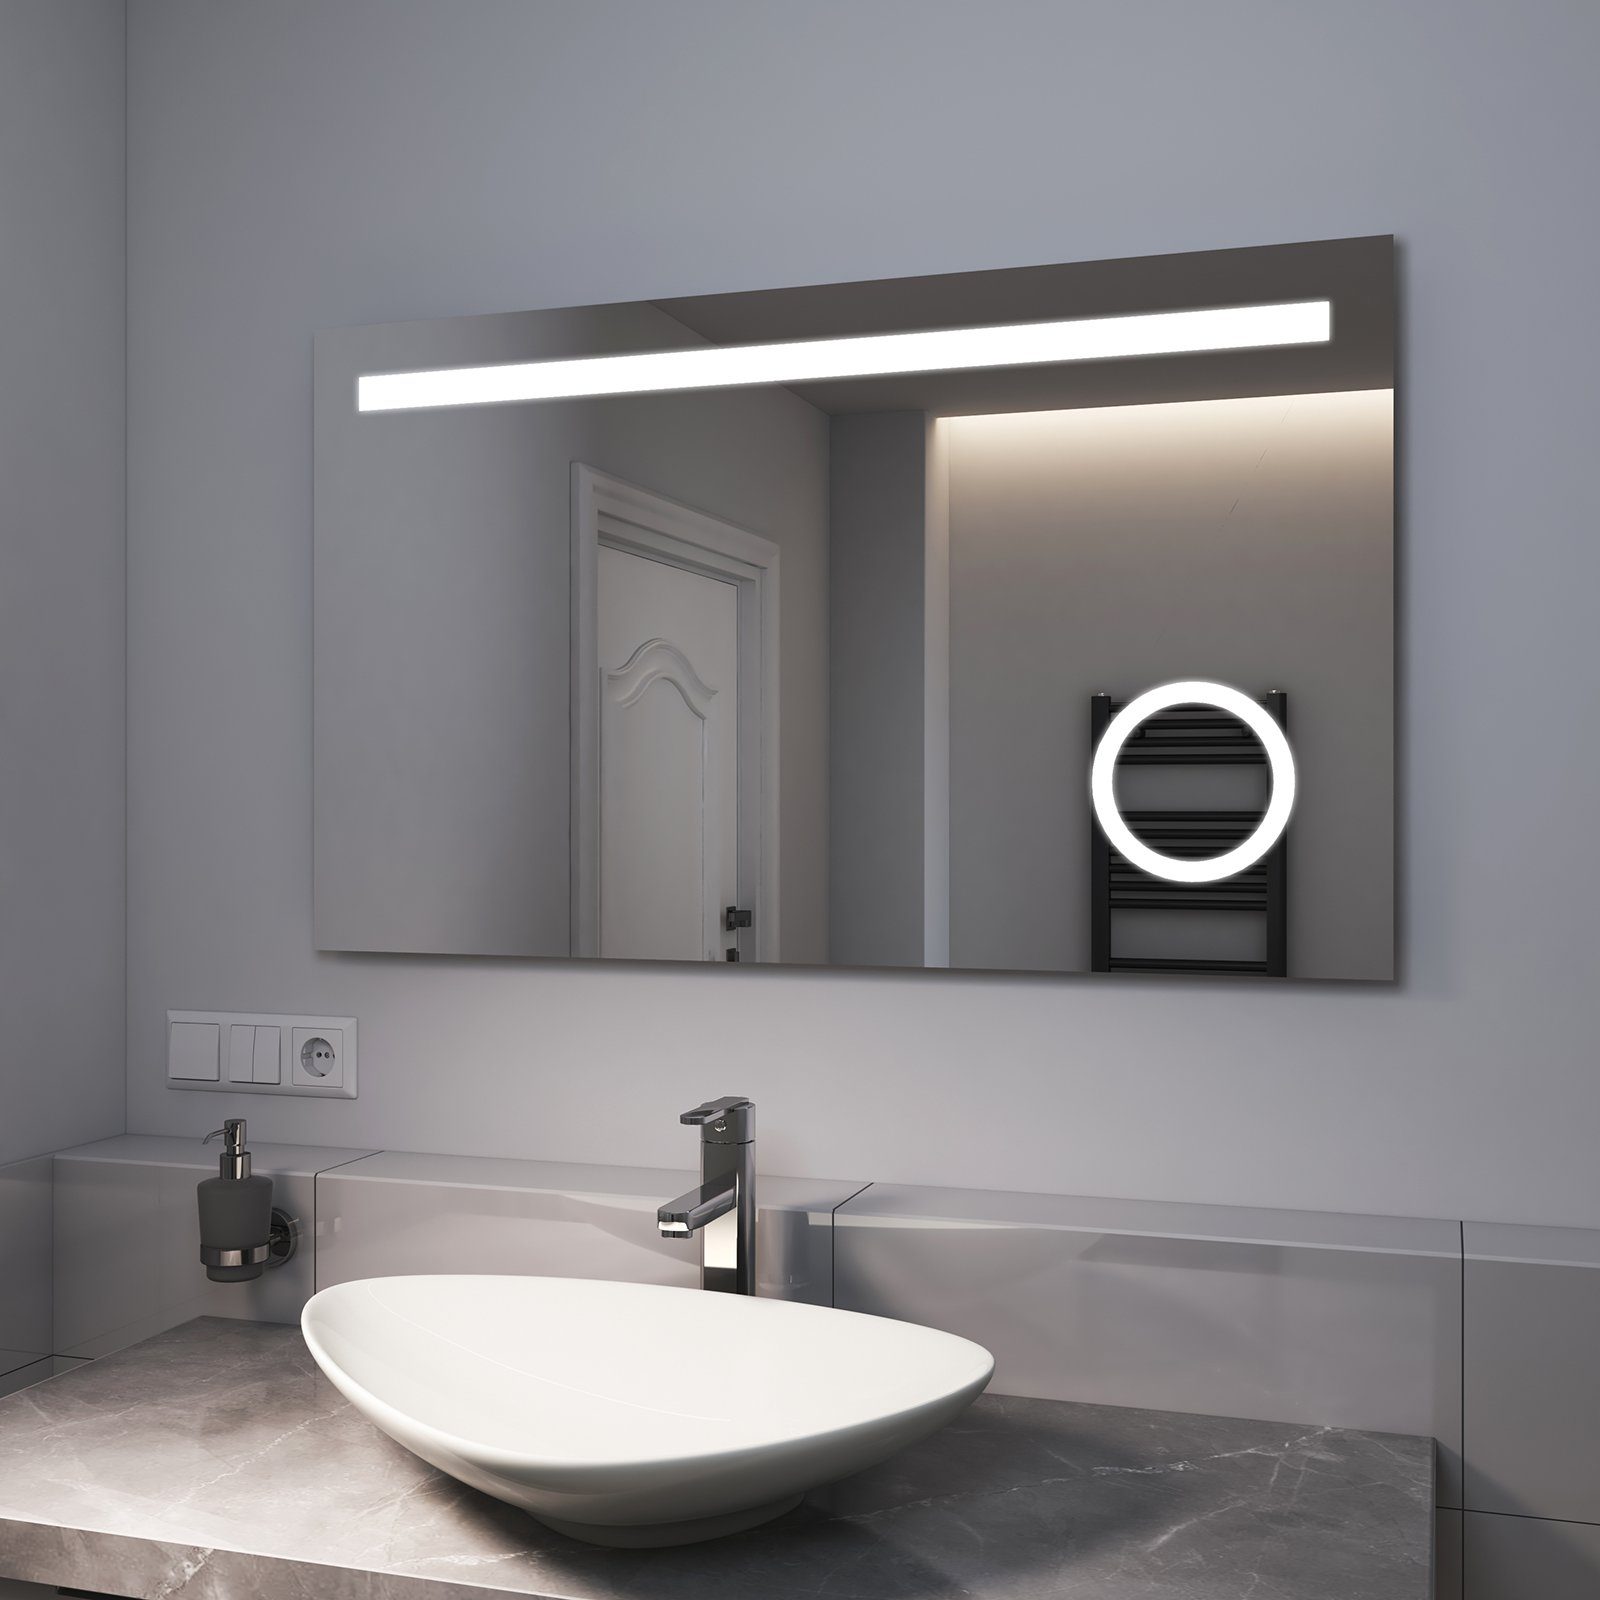 EMKE Badspiegel EMKE Lichtfarbe mit Badspiegel LED und Beschlagfrei, Wandspiegel, Taste Beleuchtung, mit 2 LED Warmweiß/Kaltweiß